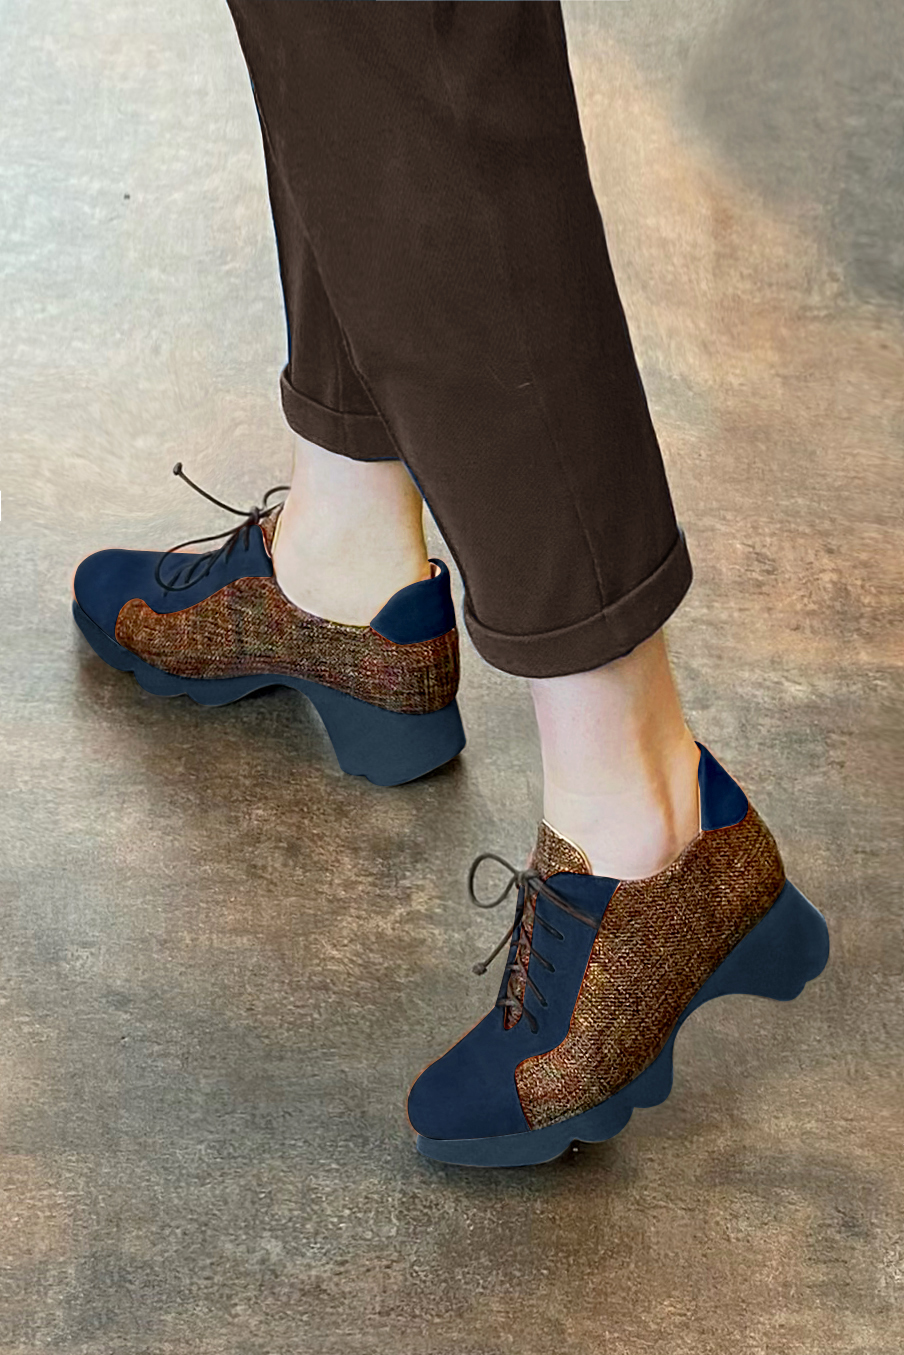 Chaussure femme à lacets : Derby sport couleur bleu marine et orange corail.. Vue porté - Florence KOOIJMAN